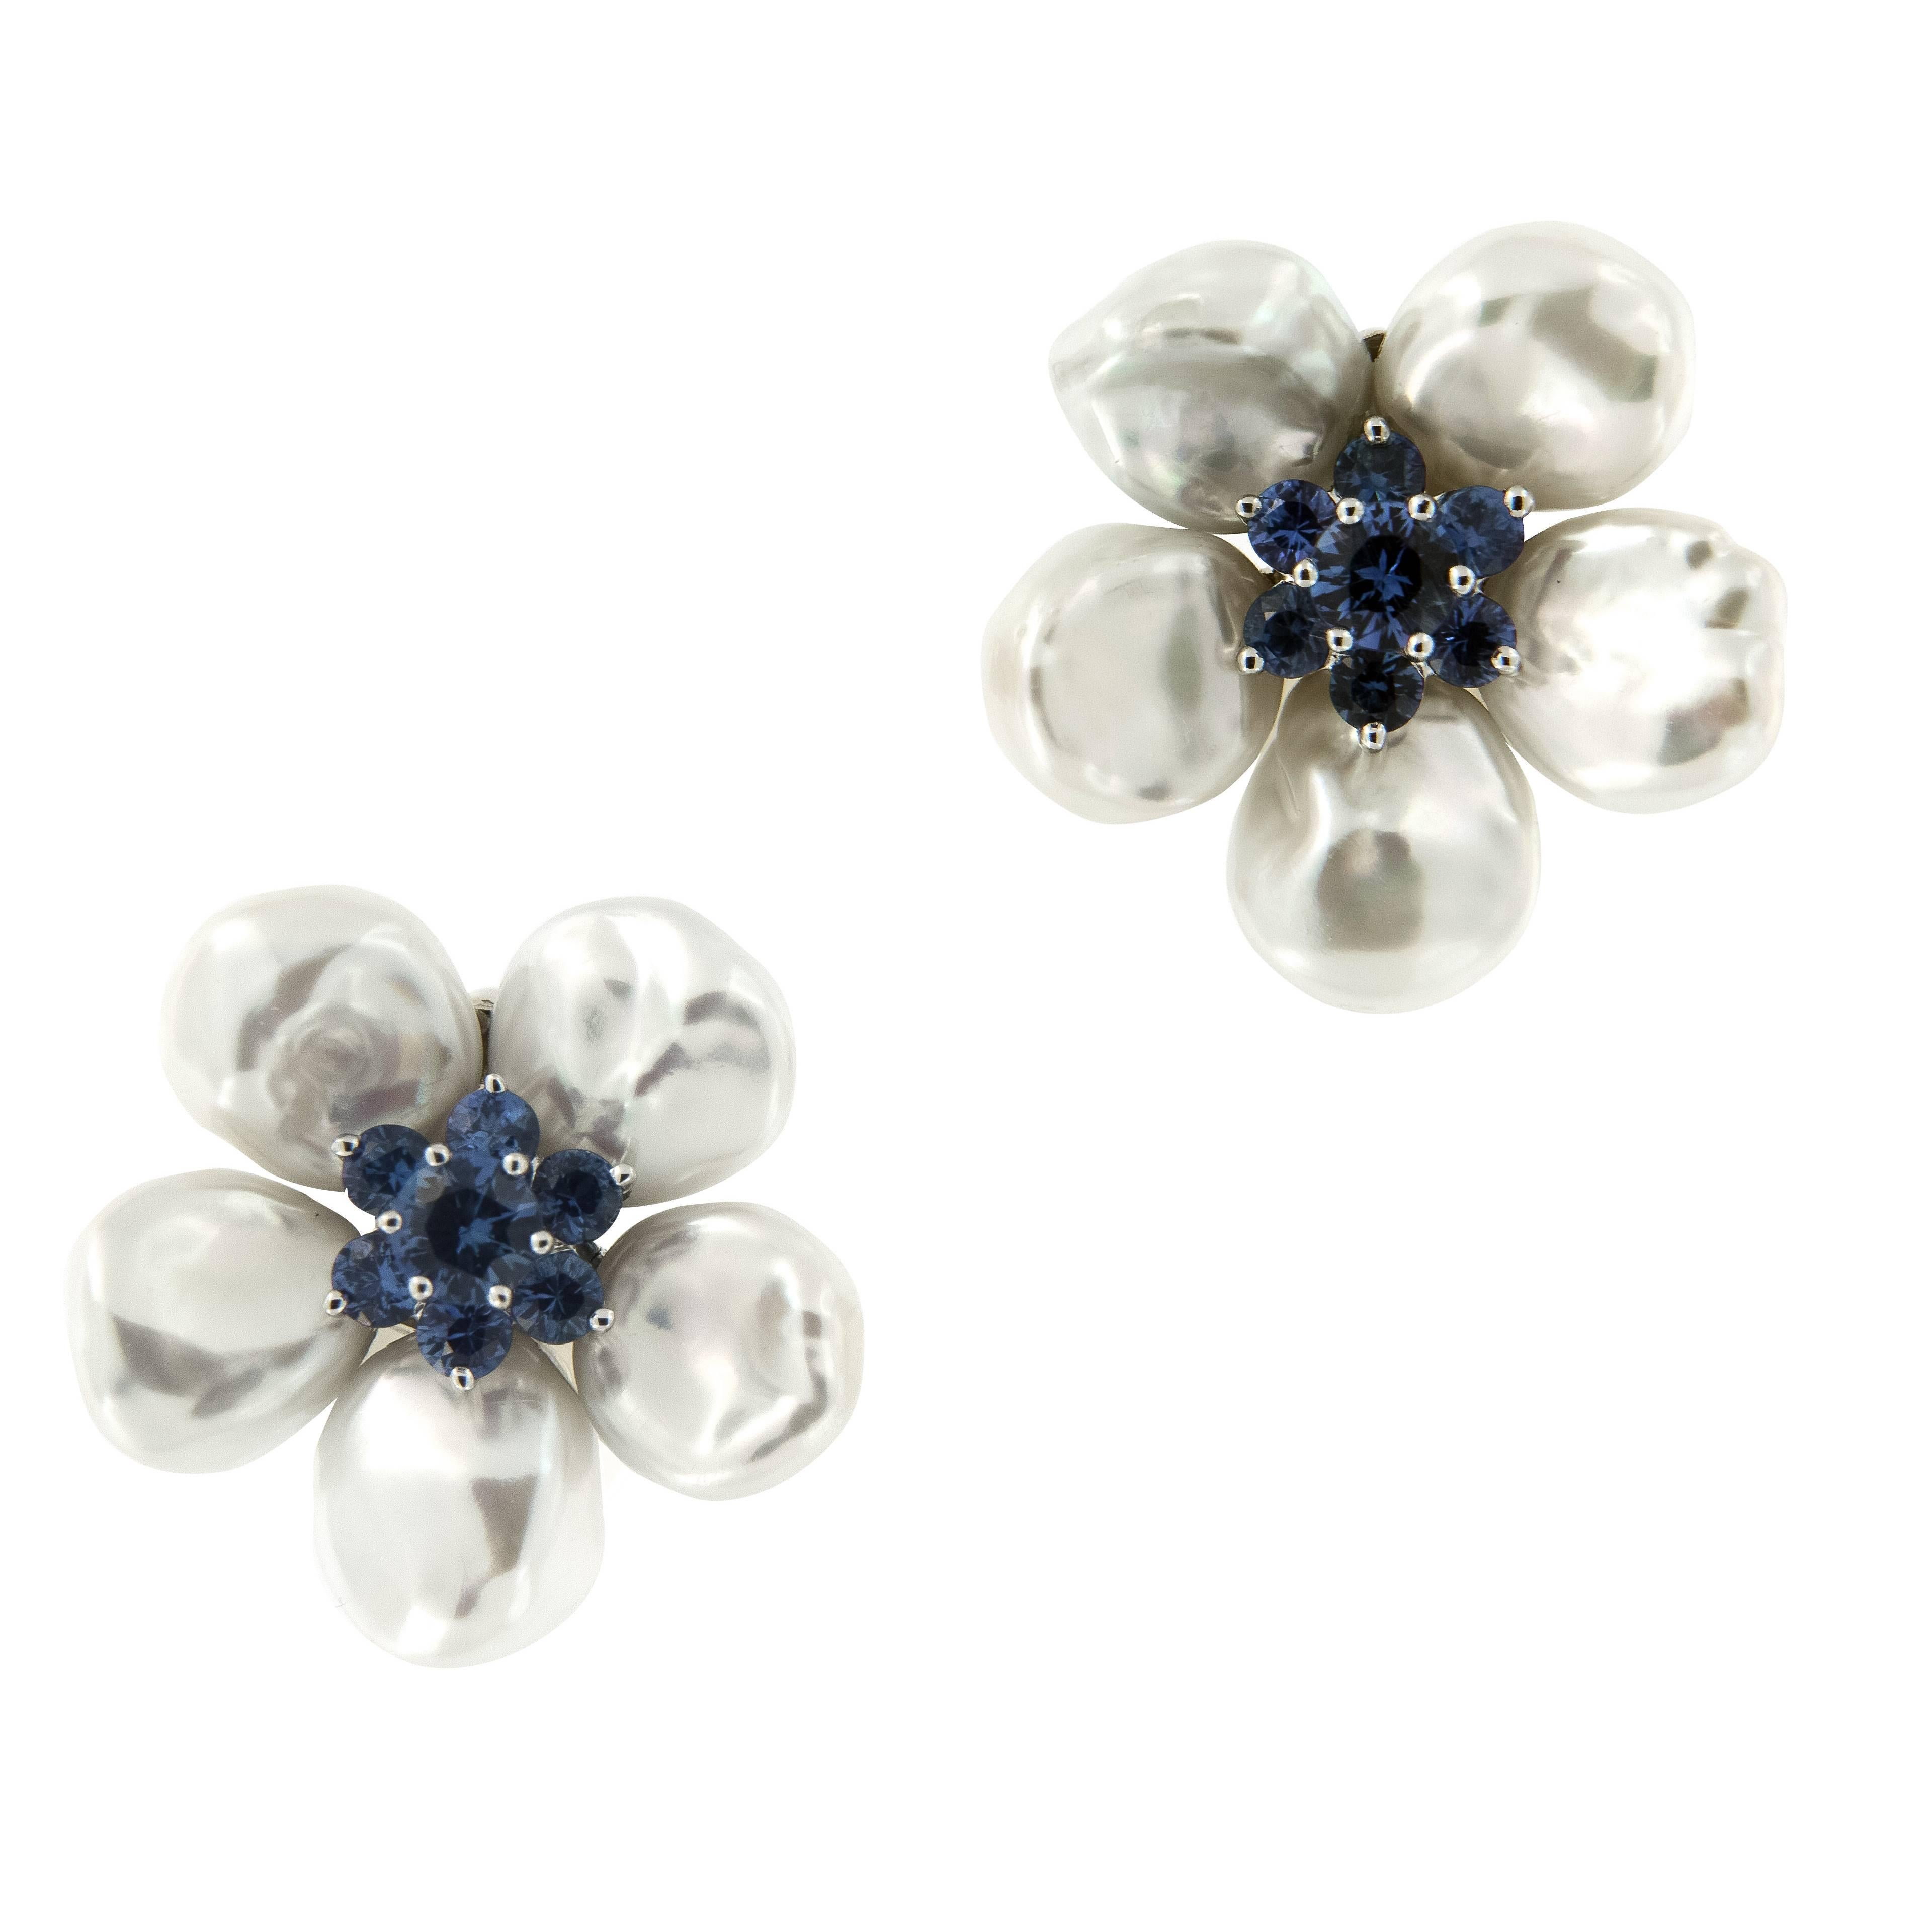 Seaman Schepps Pearl Sapphire “Biwa Flower” Earrings